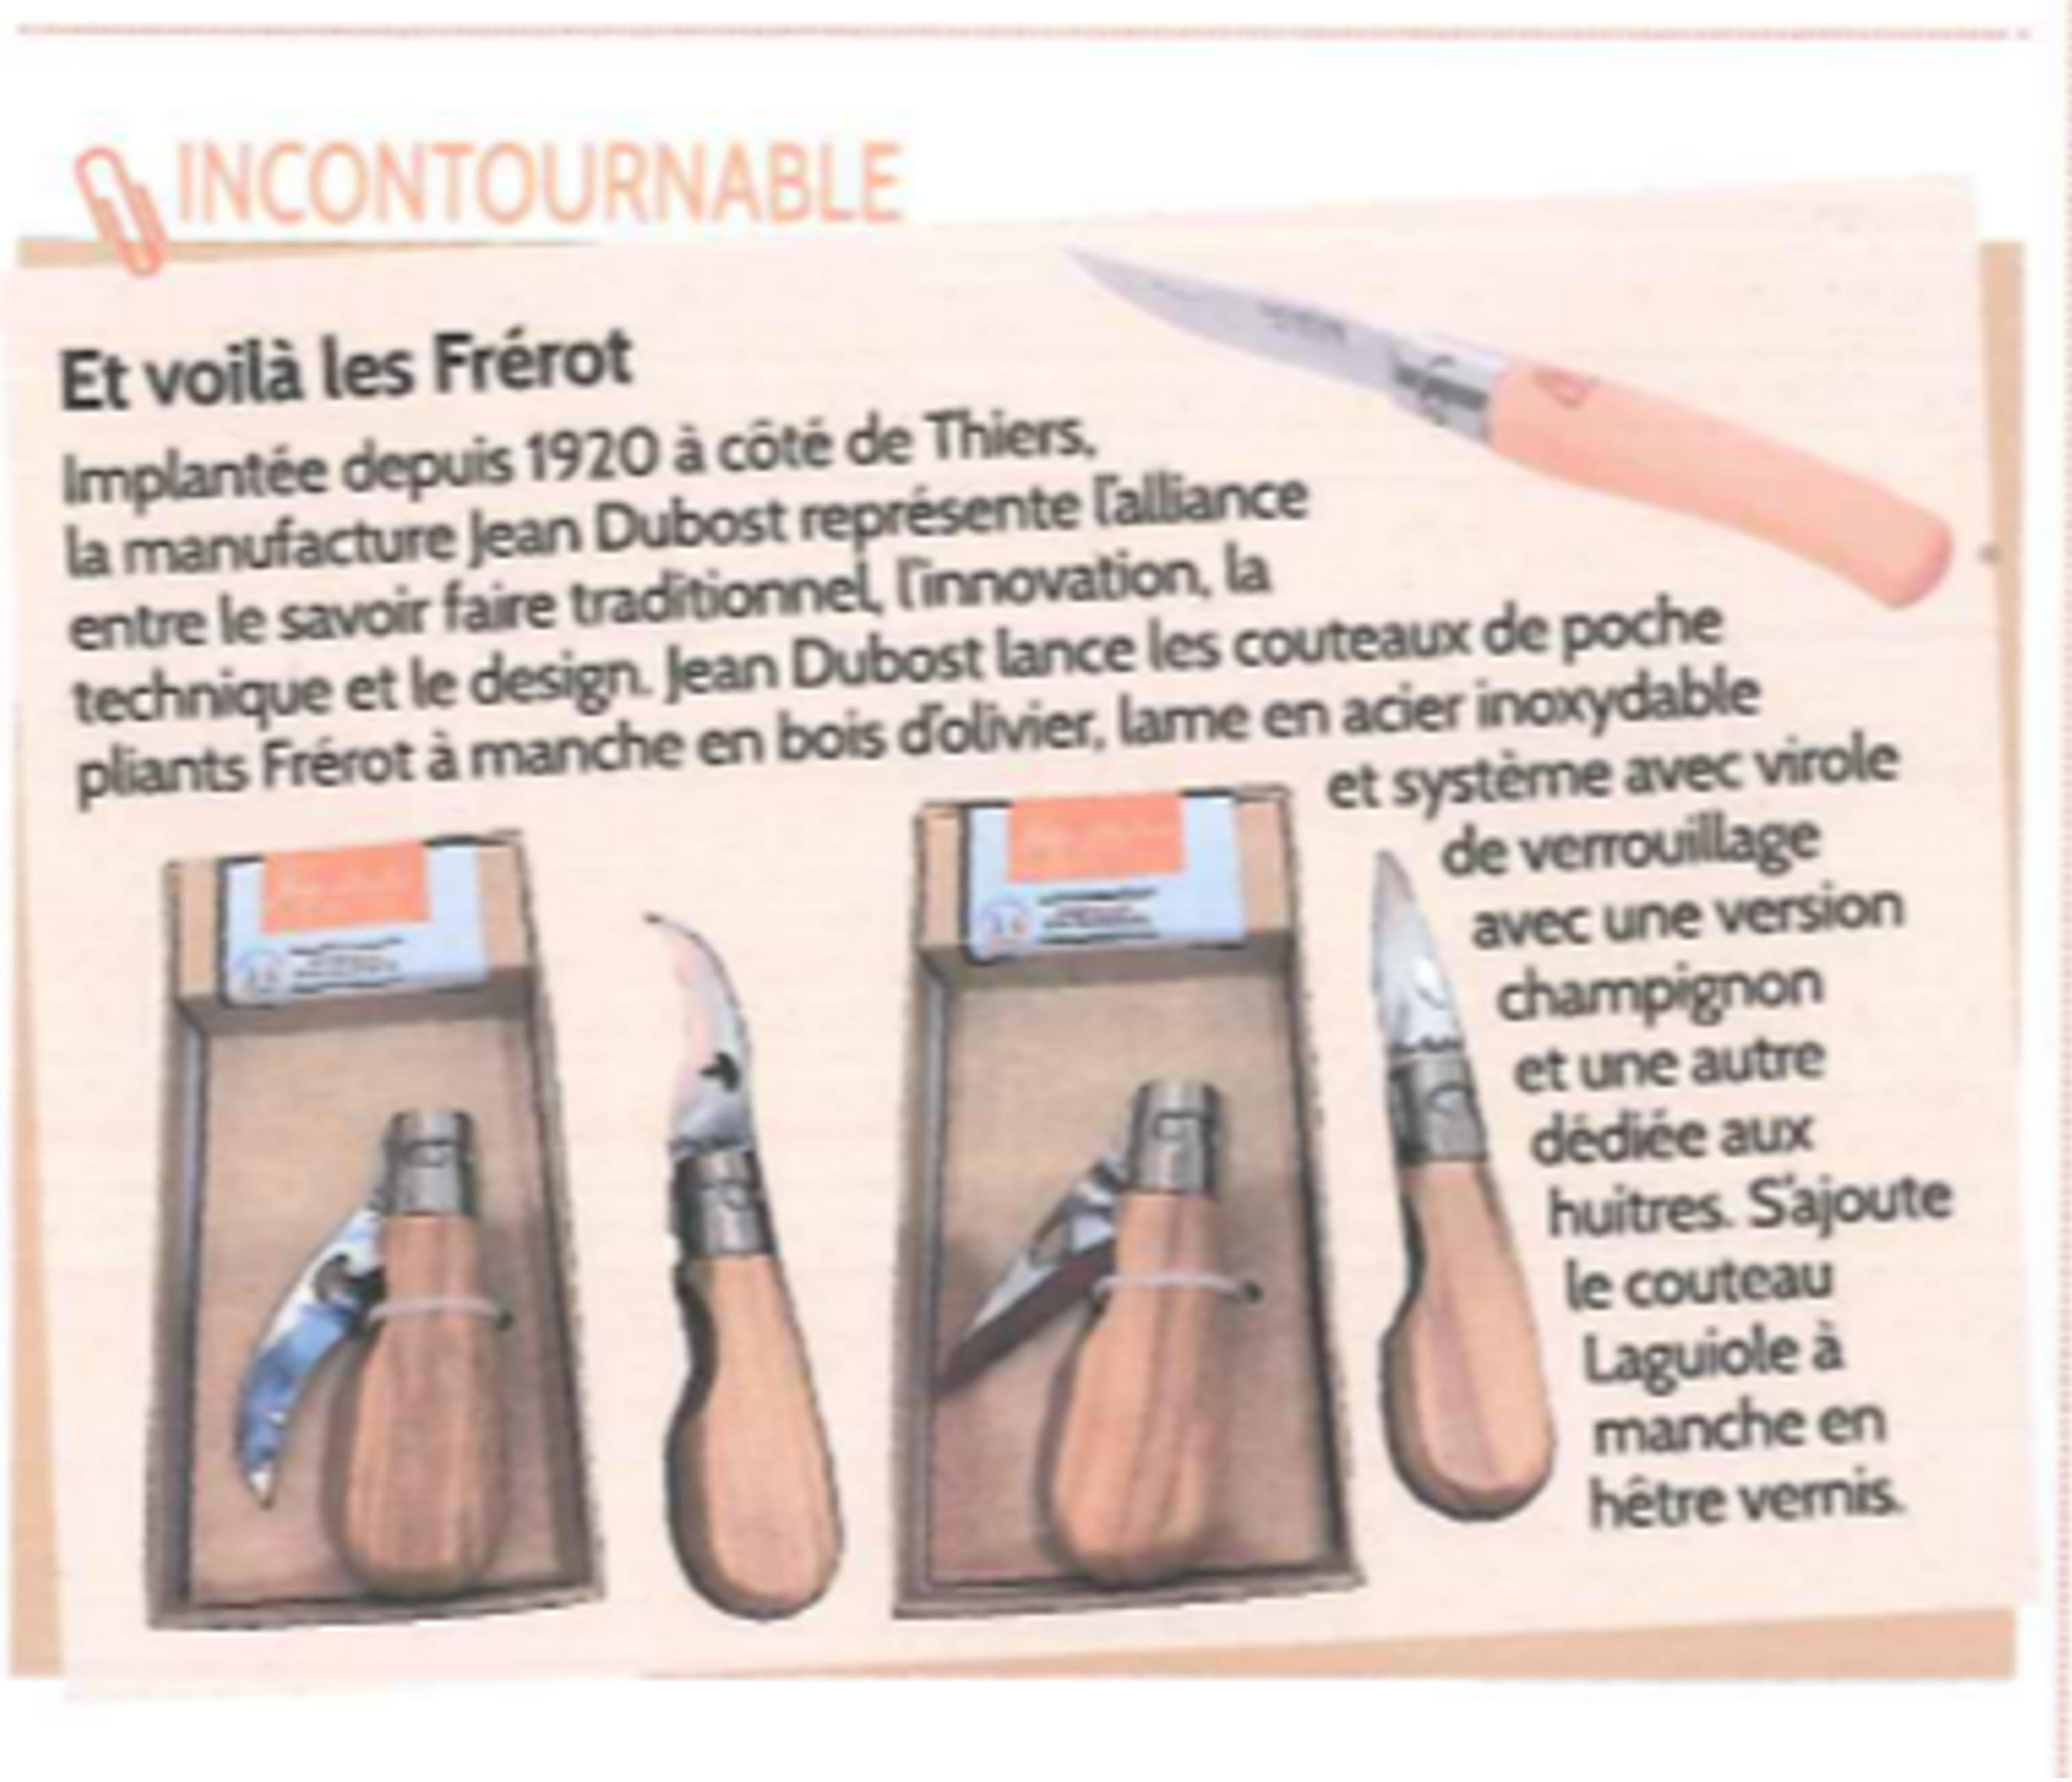 Couteaux de poche Jean Dubost Frérot